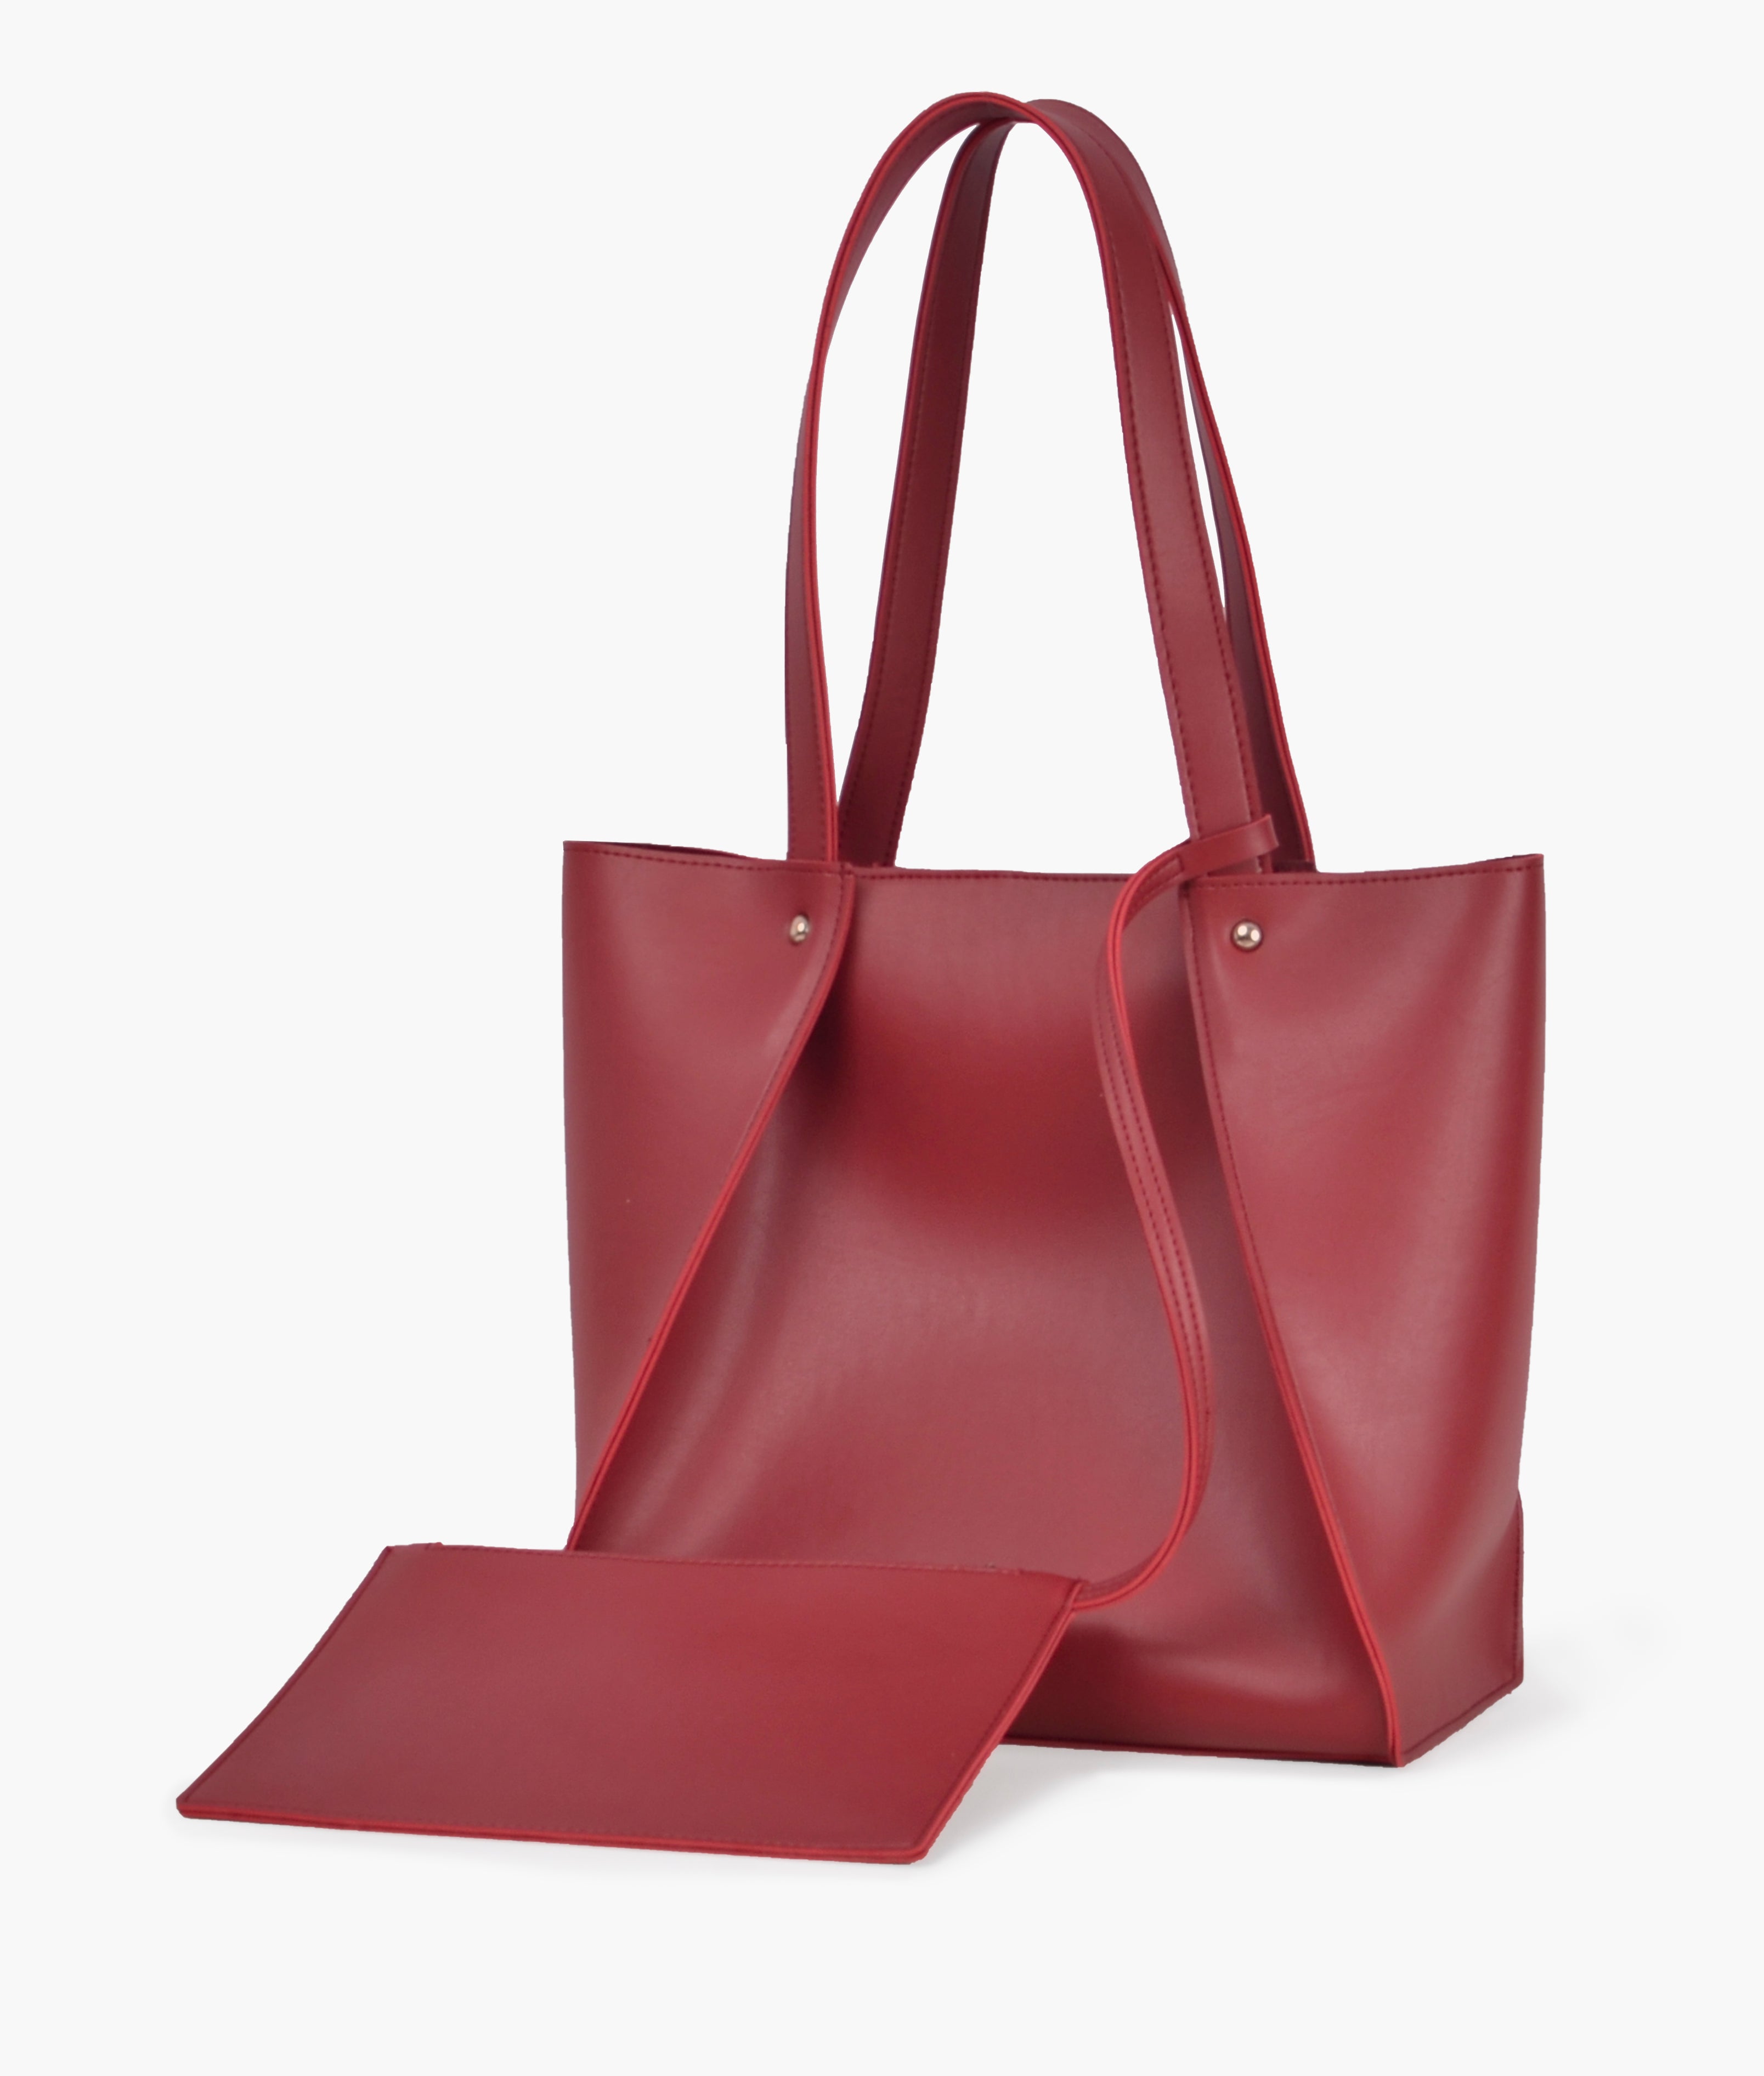 Maroon shopping tote bag